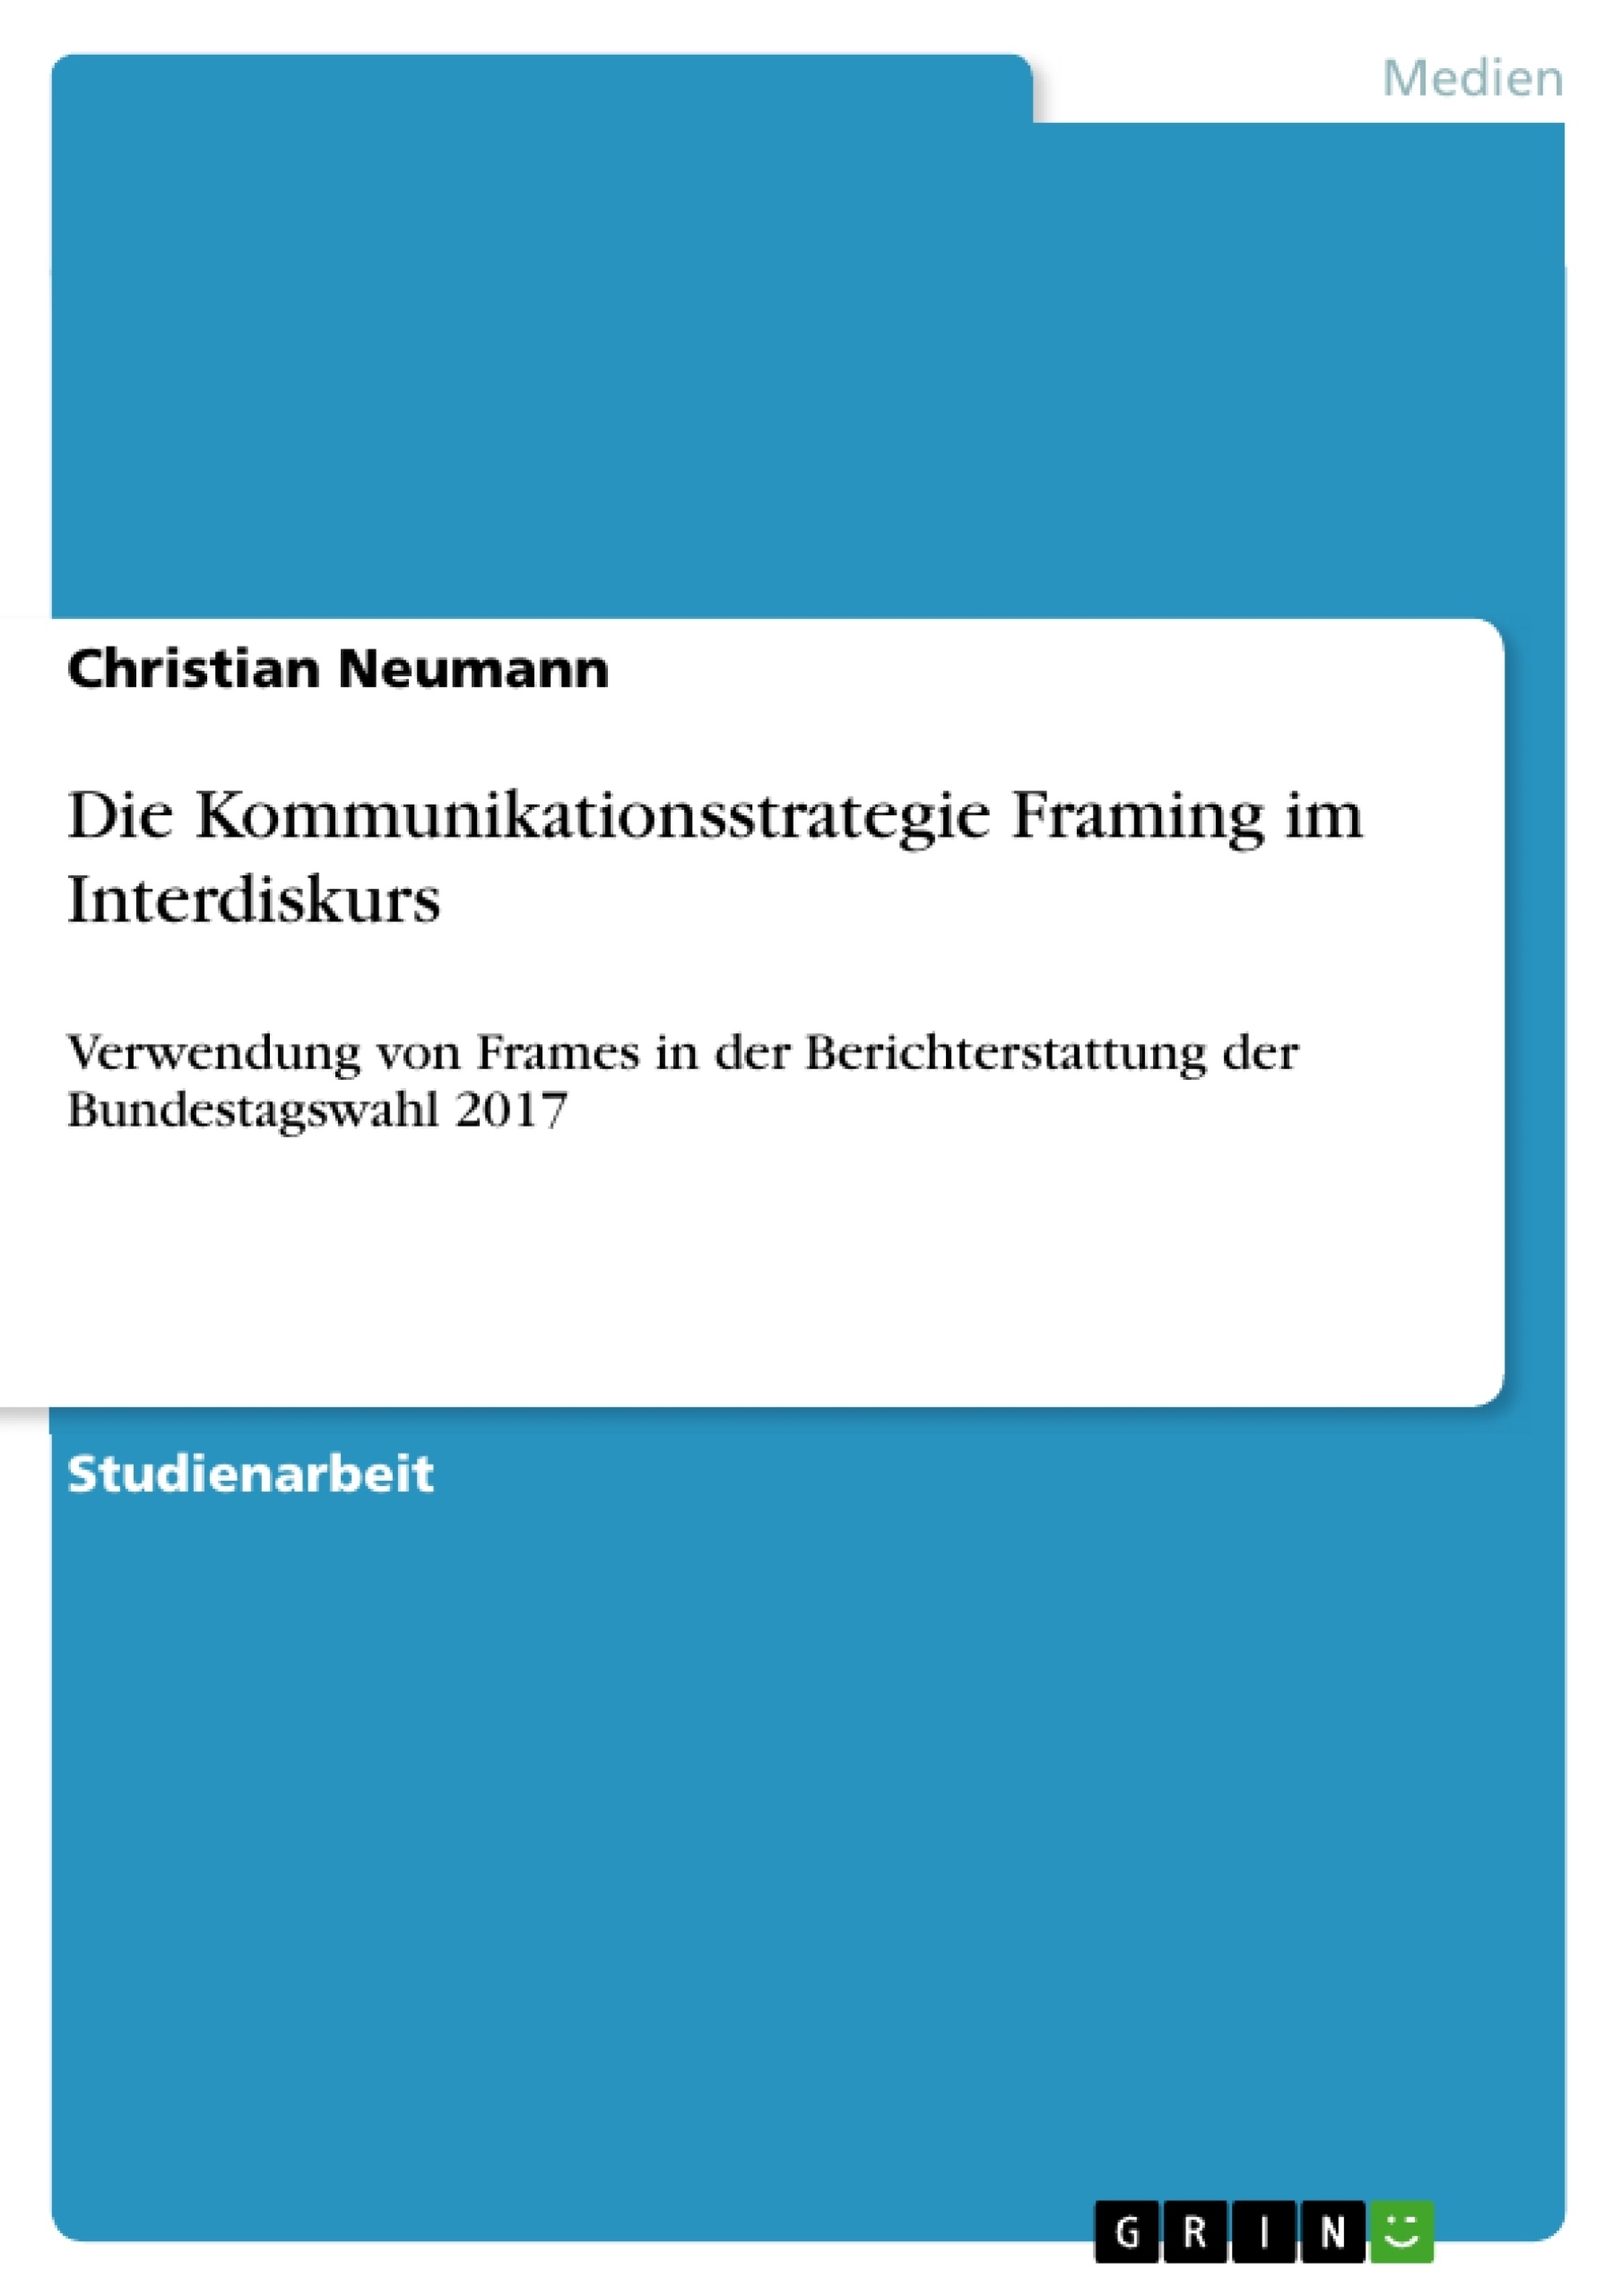 Title: Die Kommunikationsstrategie Framing im Interdiskurs